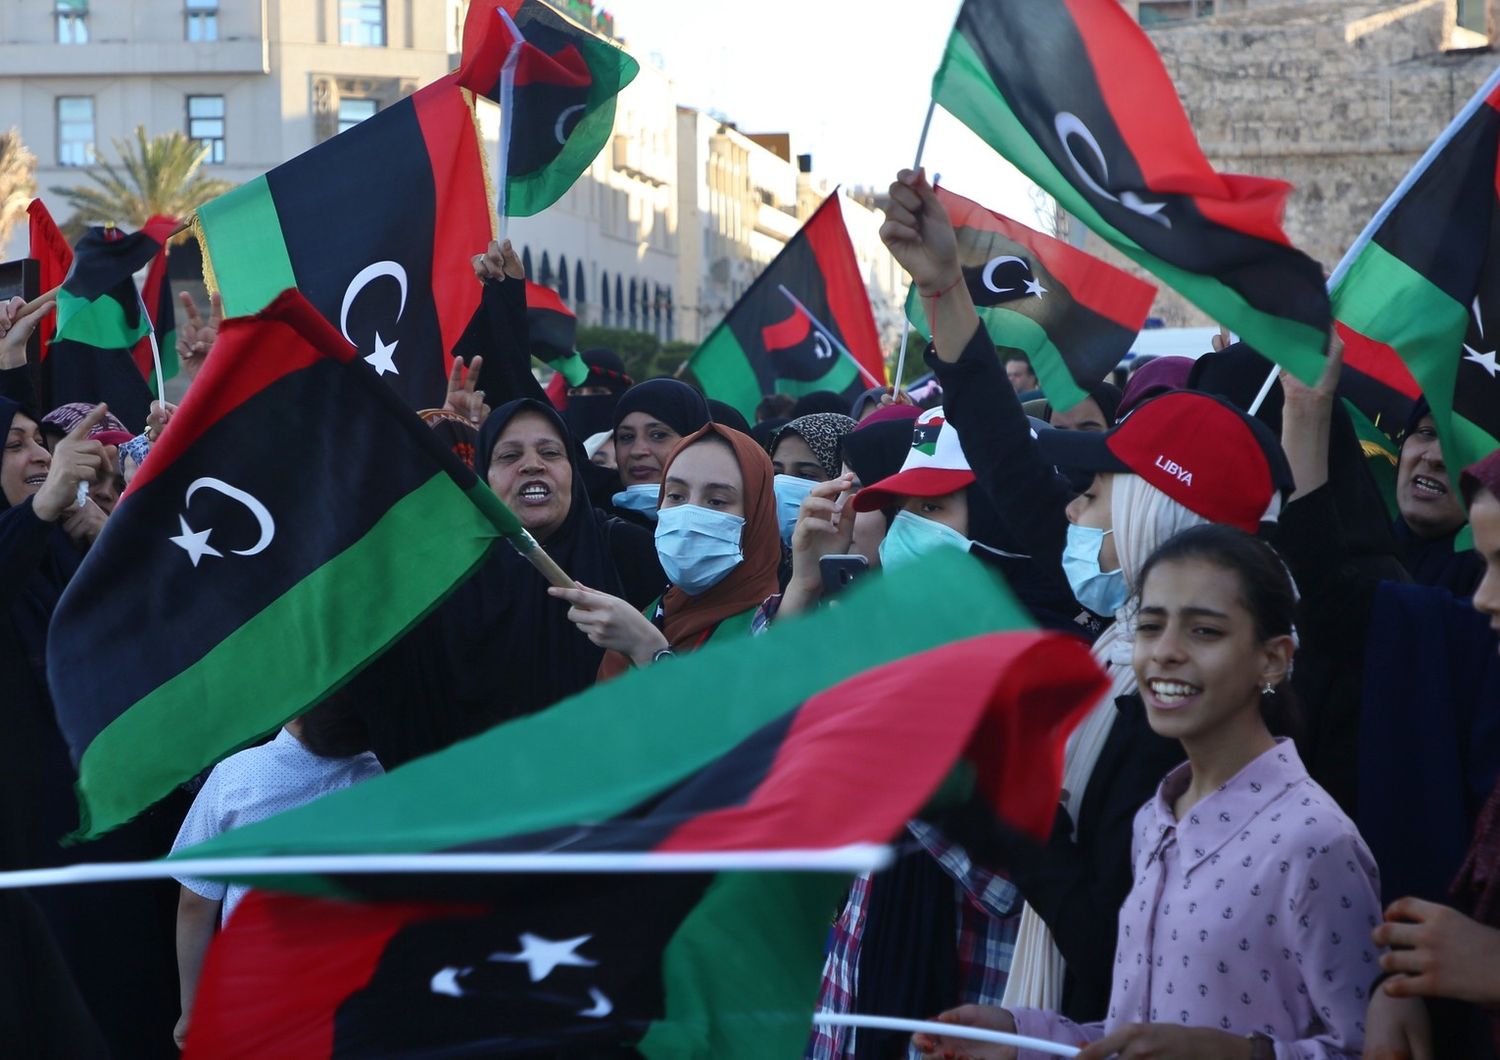 Festeggiamenti in piazza dei martiri a Tripoli per la liberazione di Tarhuna e Bani Walid dalle milizie di Haftar